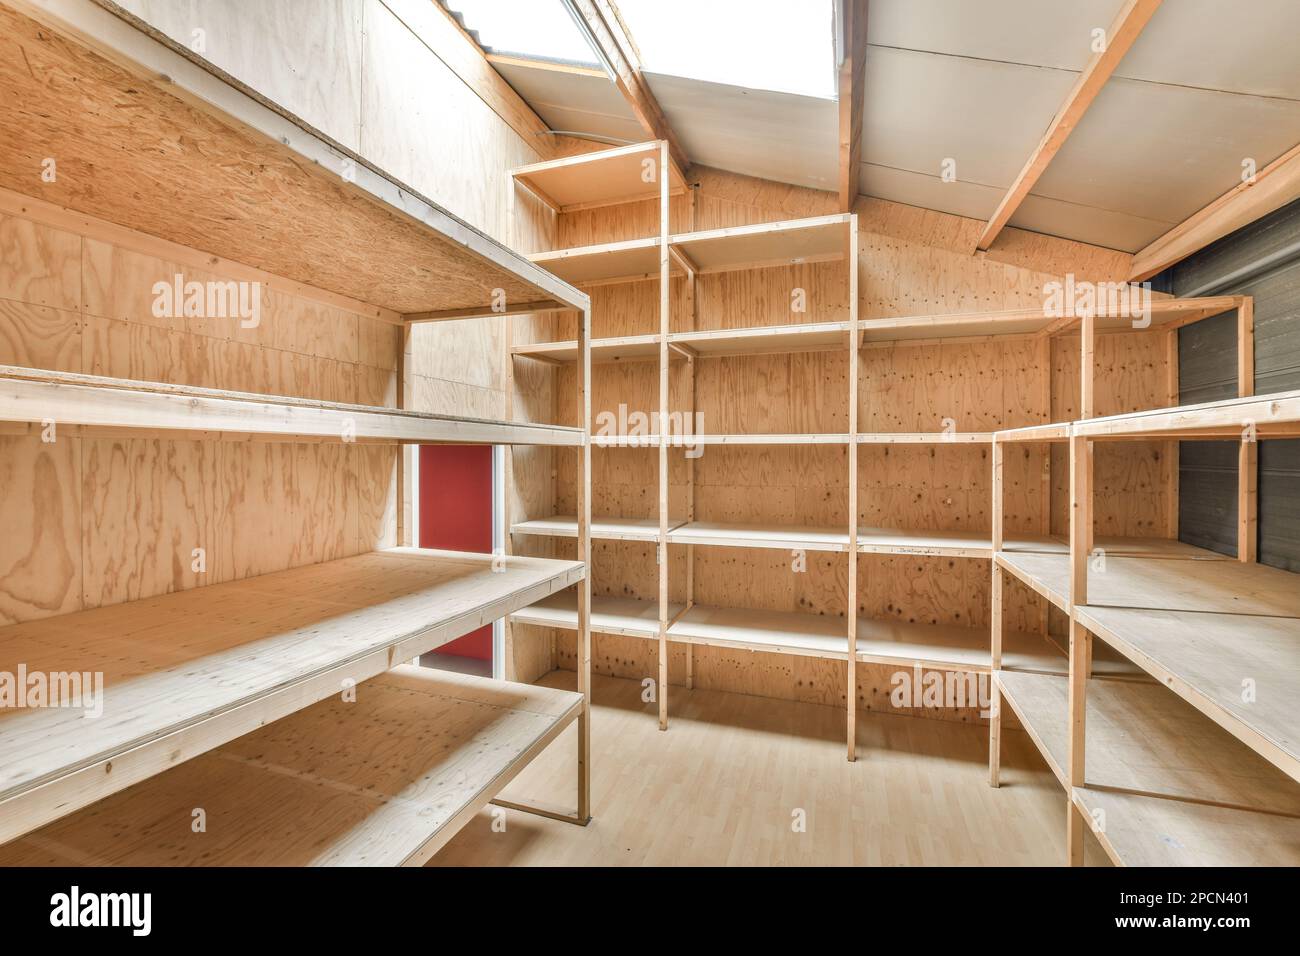 l'intérieur d'une pièce avec des étagères en bois et des étagères de chaque côté, tous faits de contreplaqué Banque D'Images